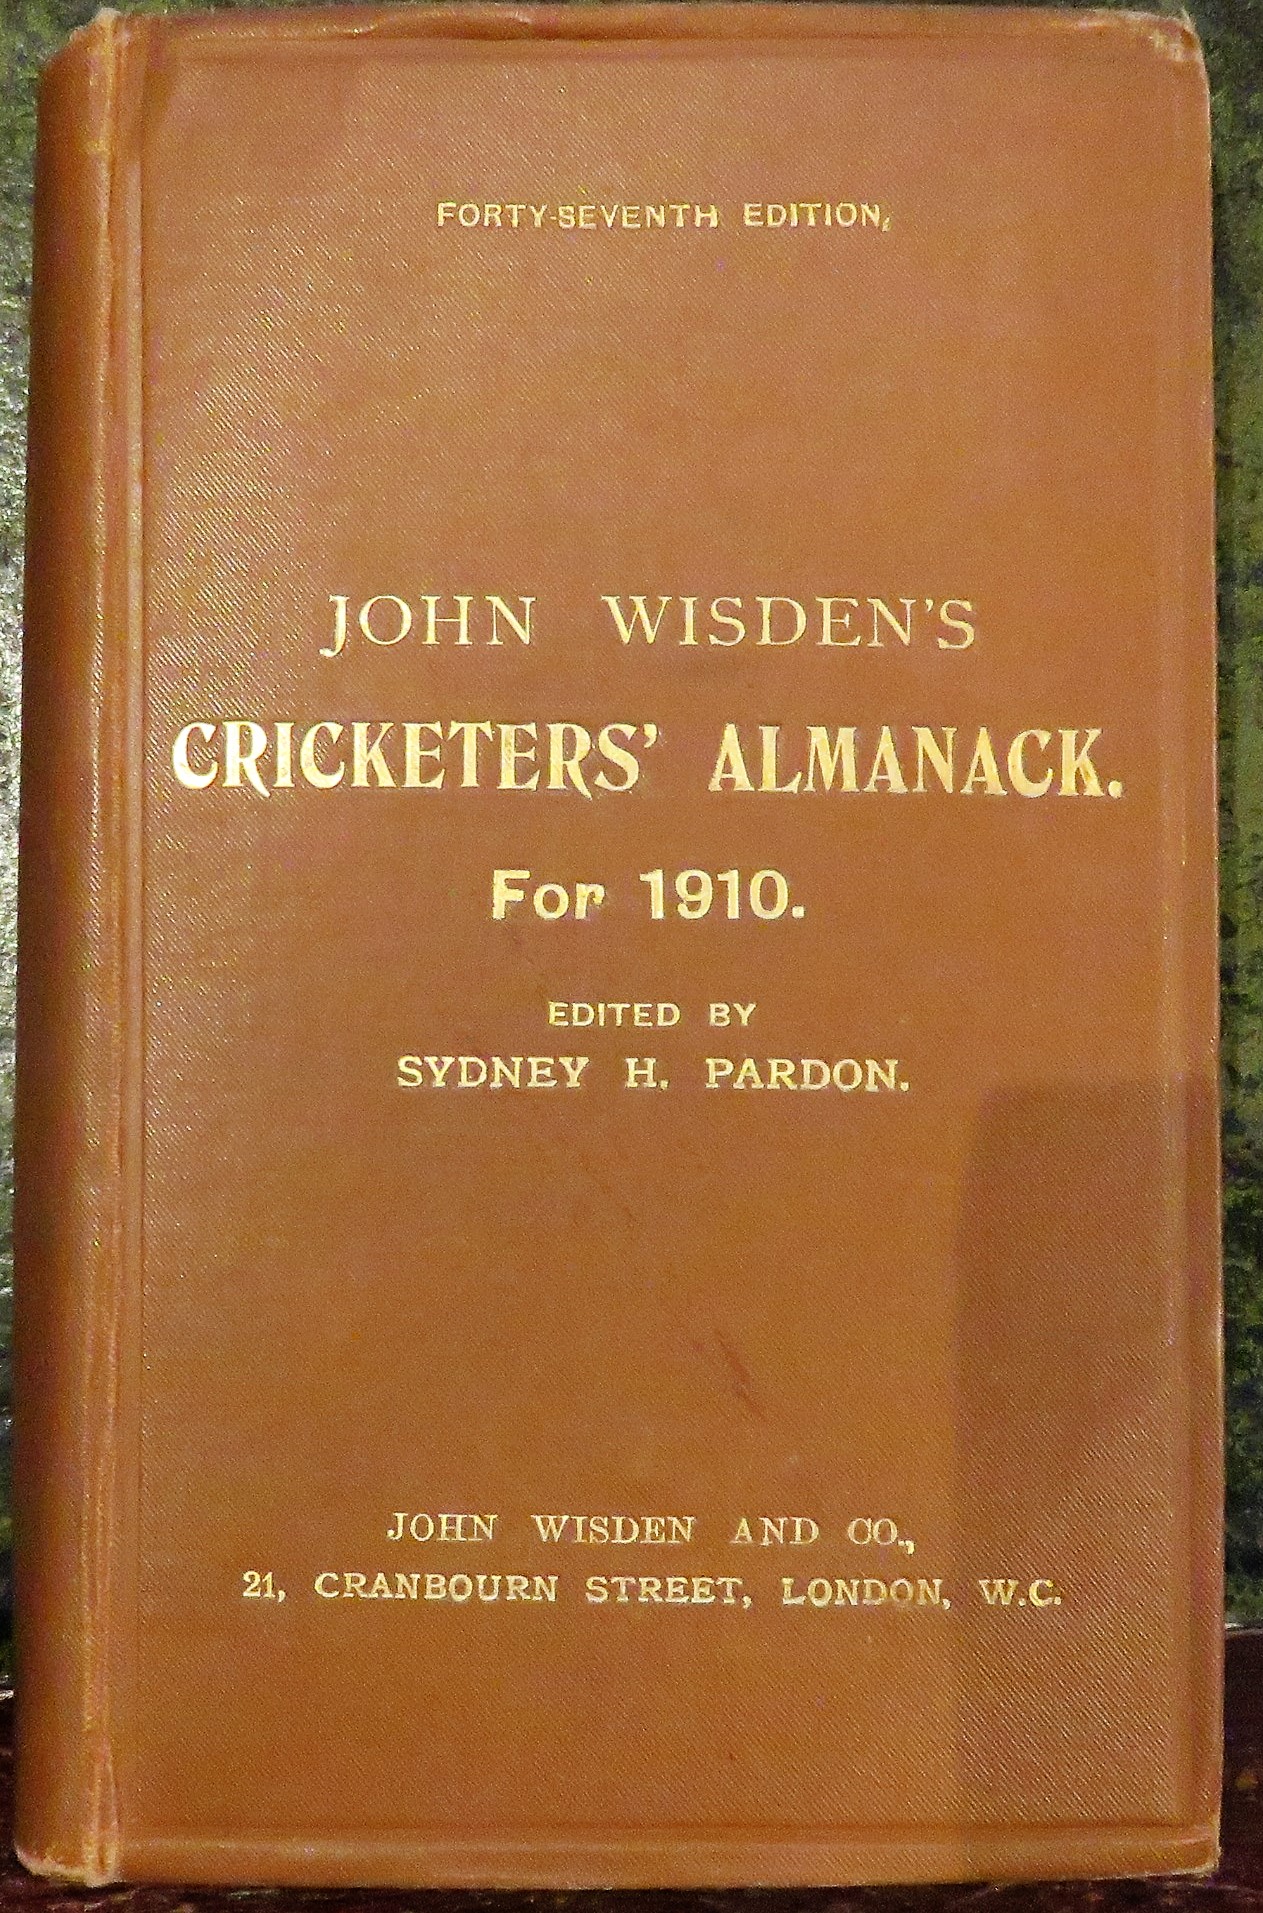 **John Wisden's Cricketers' Almanack For 1910**